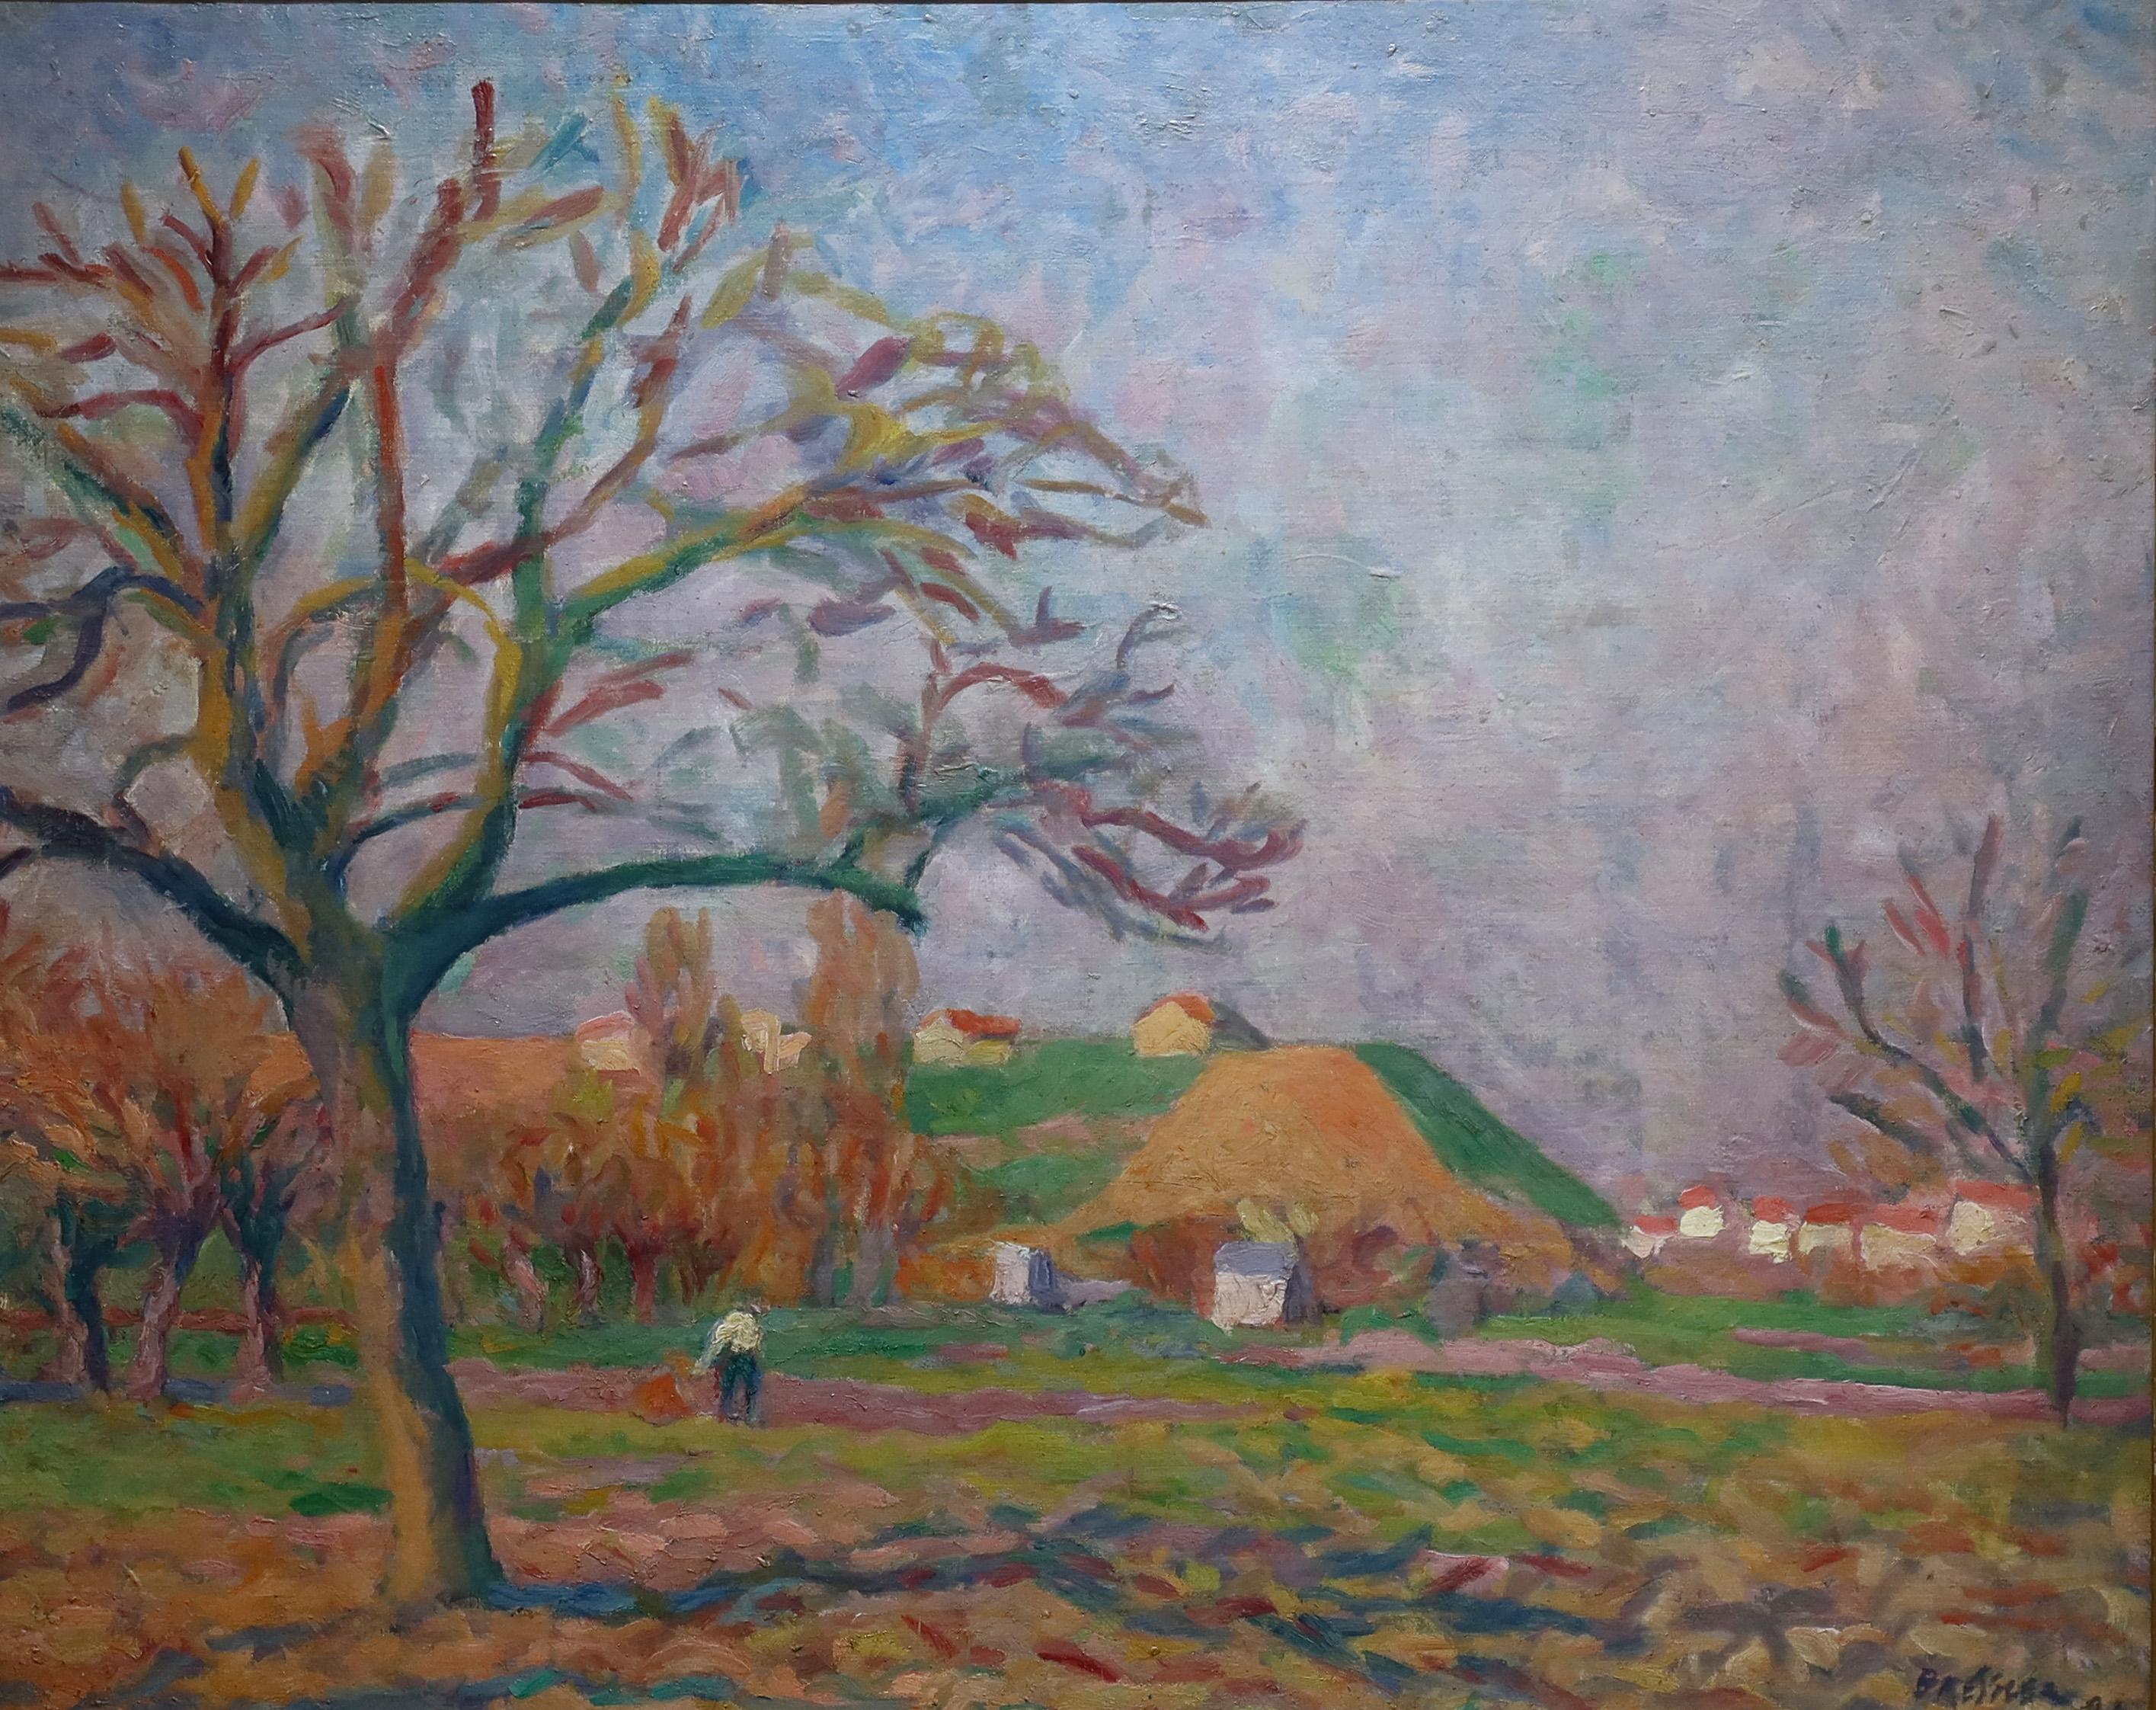 Zu verkaufen, Emile Bressler (1886 - 1966).... Ein schweizerisch/französischer Maler des Impressionismus, der zum
Berühmt in Genf in den 1920er Jahren.  

Das Bild zeigt eine Figur, die durch einen Weg mit einem gemalten Dorf im Hintergrund